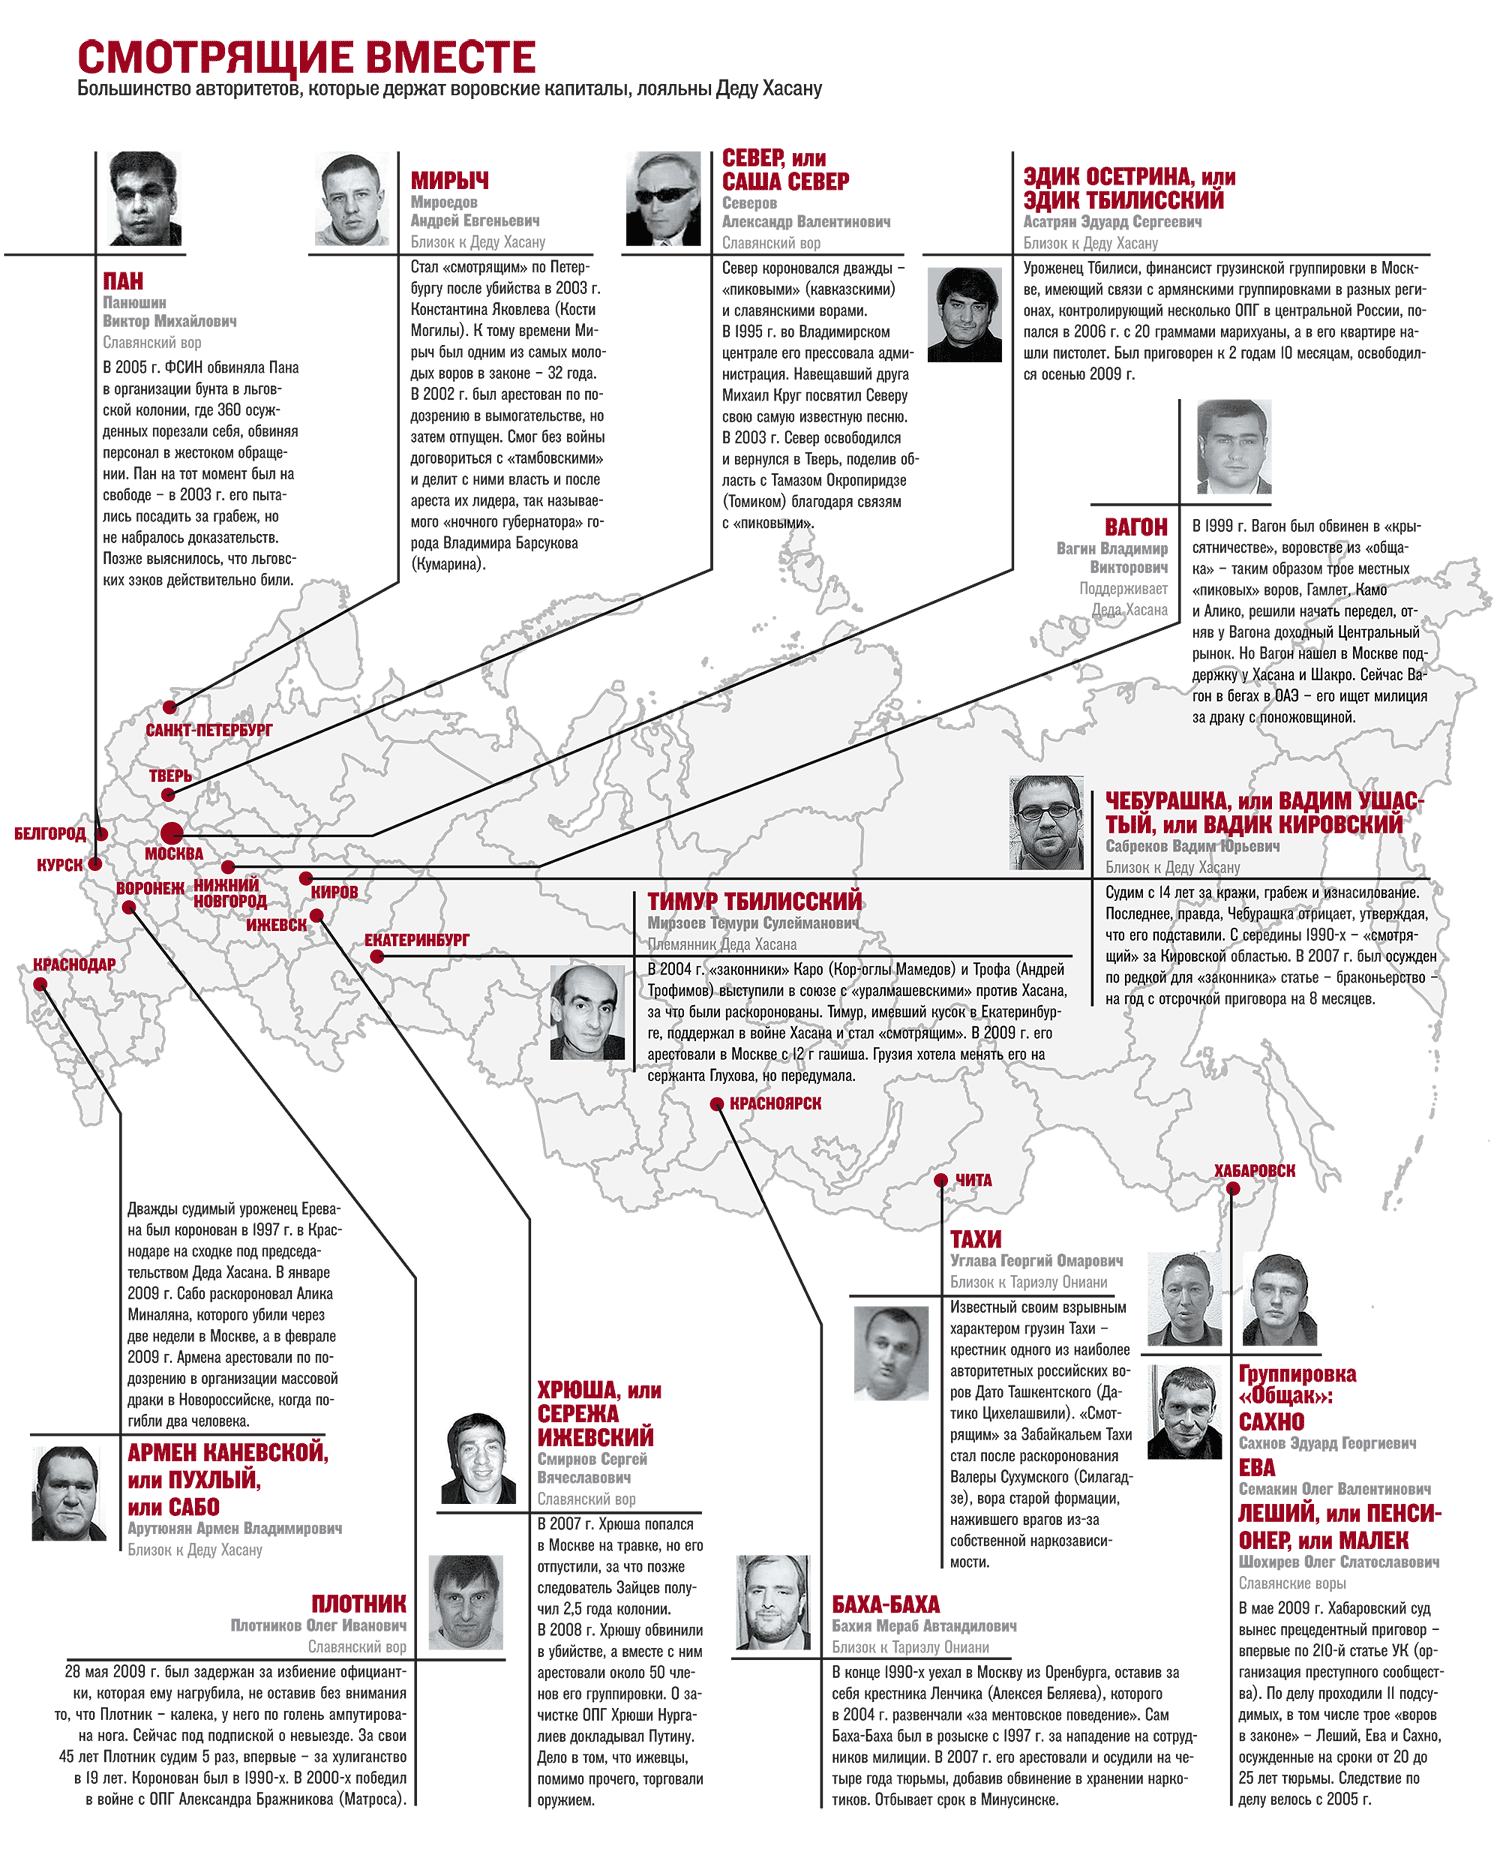 Опг книга. Карта ОПГ Москвы 90-х. Схема криминальной группировки.